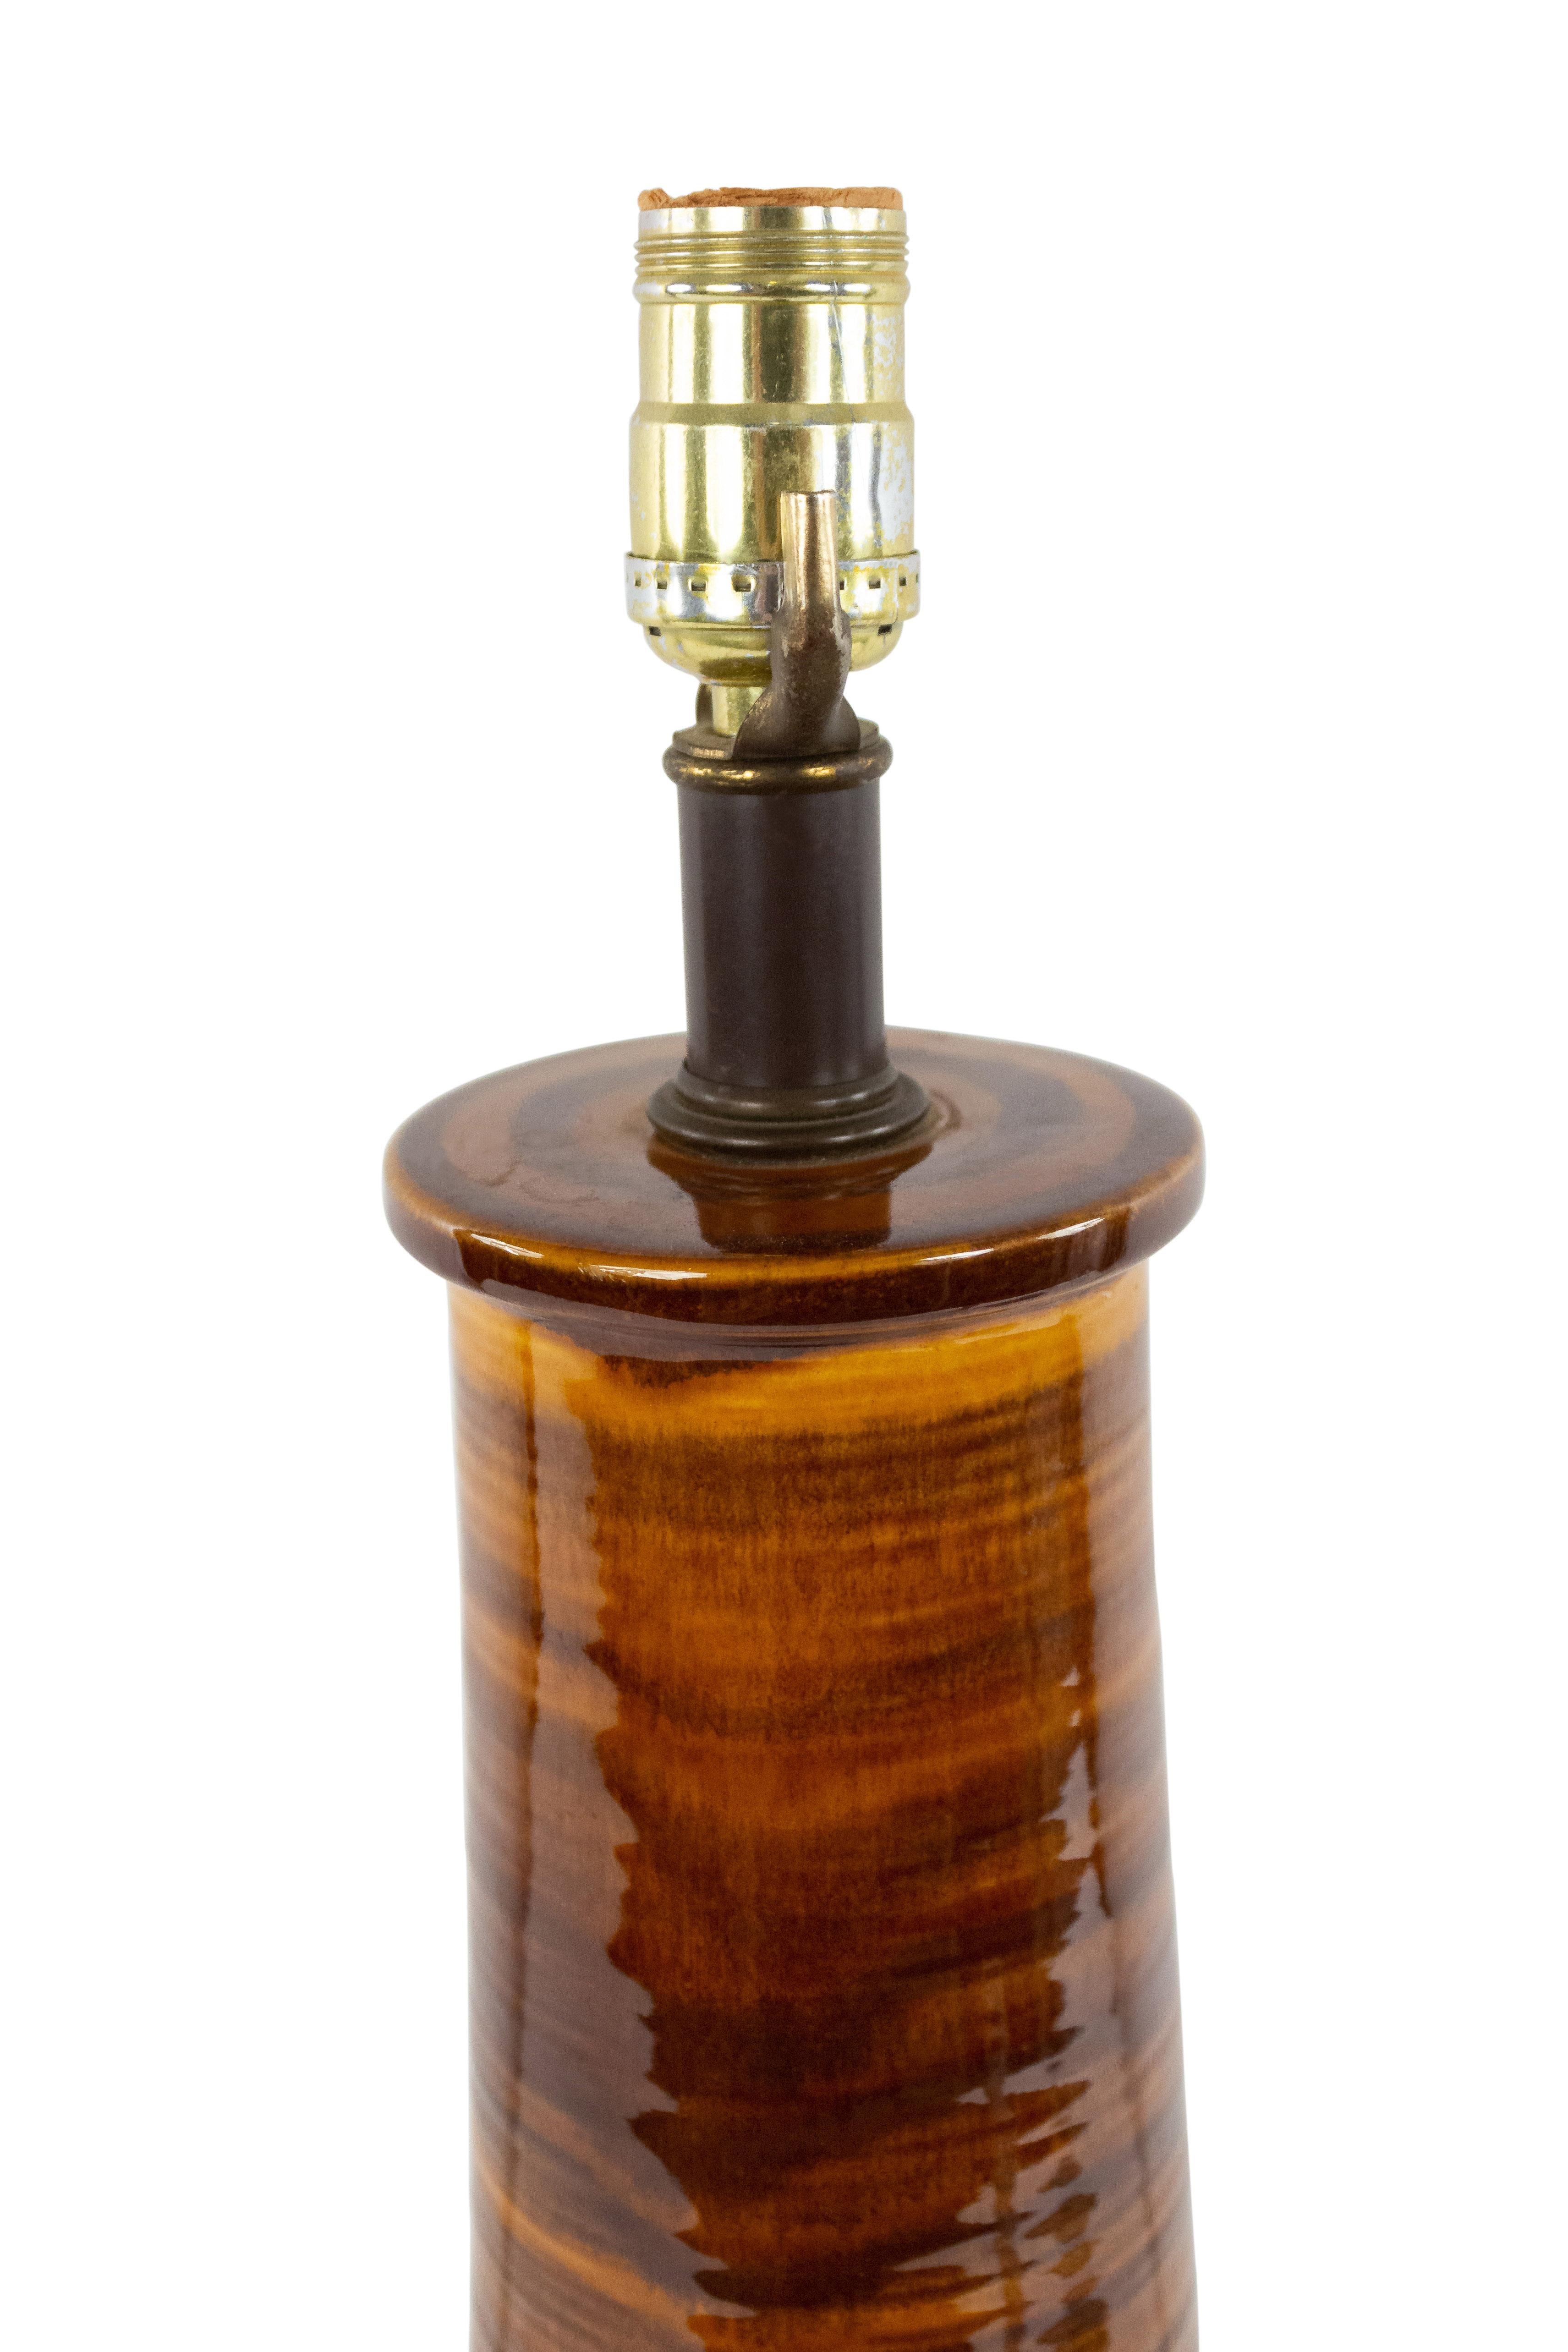 Lampe de table cylindrique à 2 niveaux, de style américain midcentury, striée de brun et de noir, avec une base ronde en métal brun.